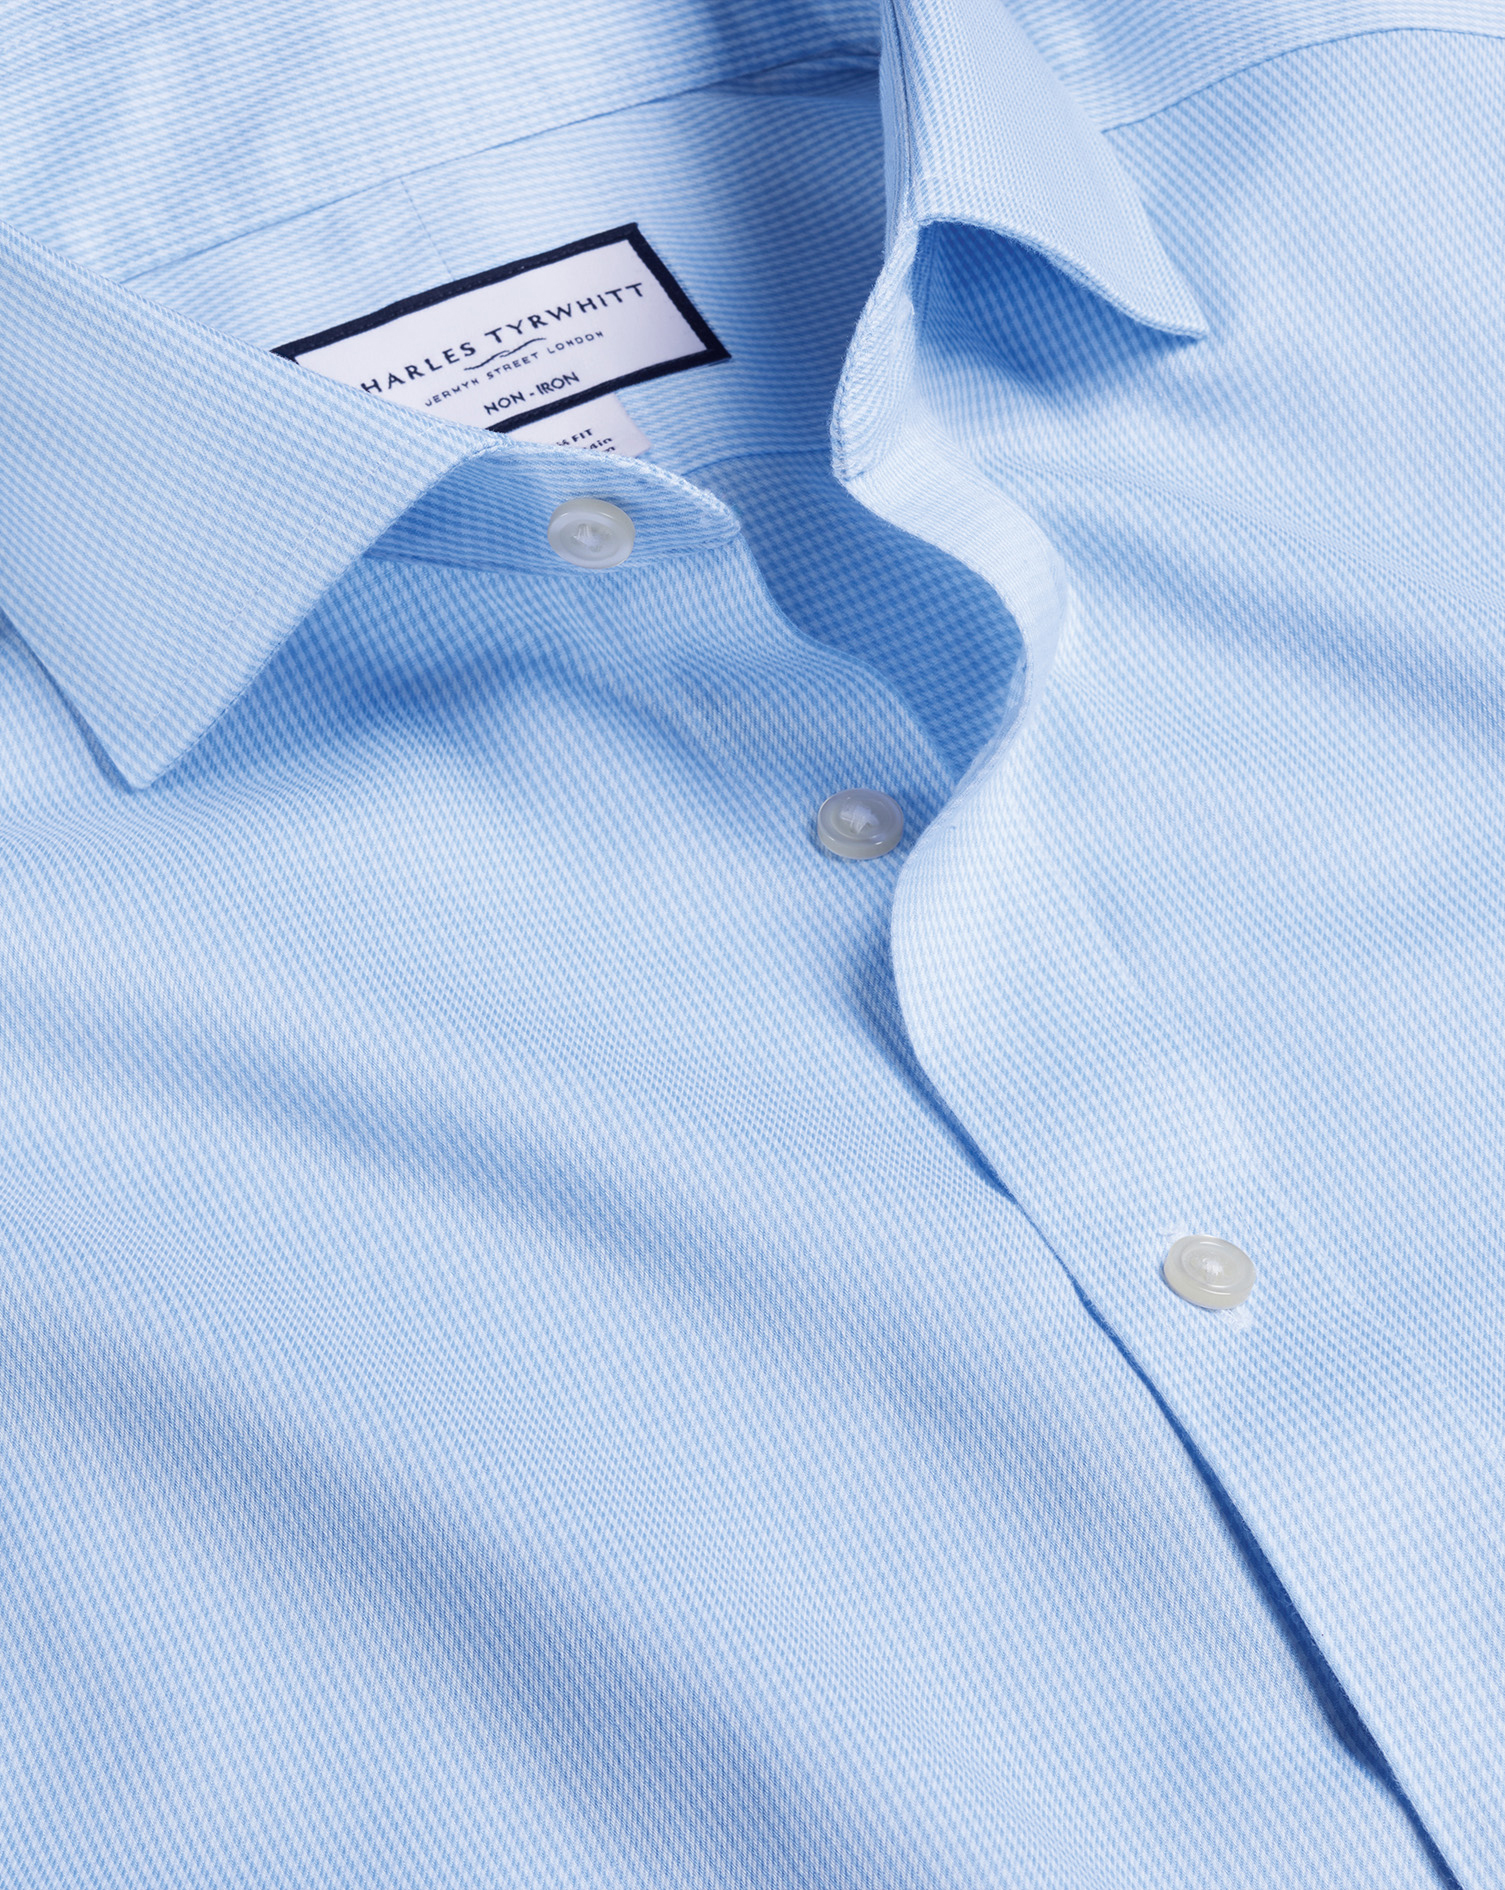 Men's Charles Tyrwhitt Cutaway Collar Non-Iron Puppytooth Dress Shirt - Sky Blue Single Cuff Size XX